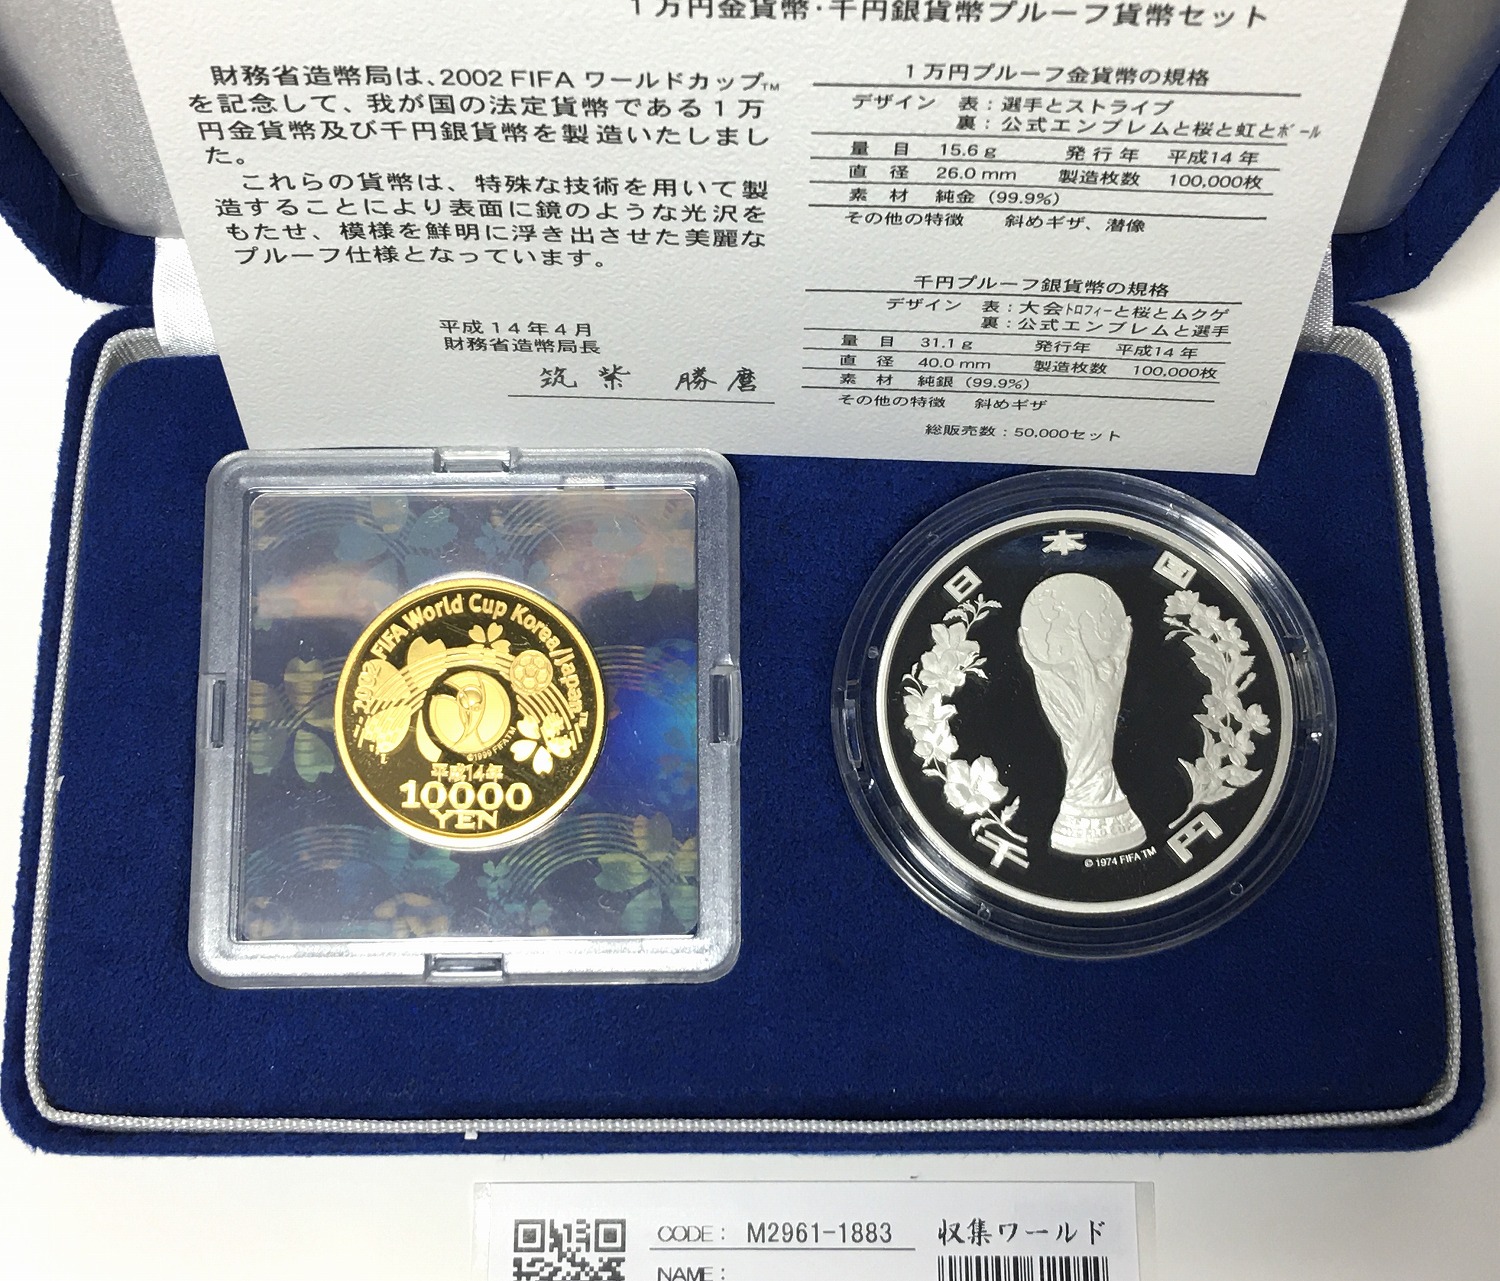 2002FIFA 日韓ワールドカップ 記念金銀プルーフ貨幣 2枚セット 完未品 ...